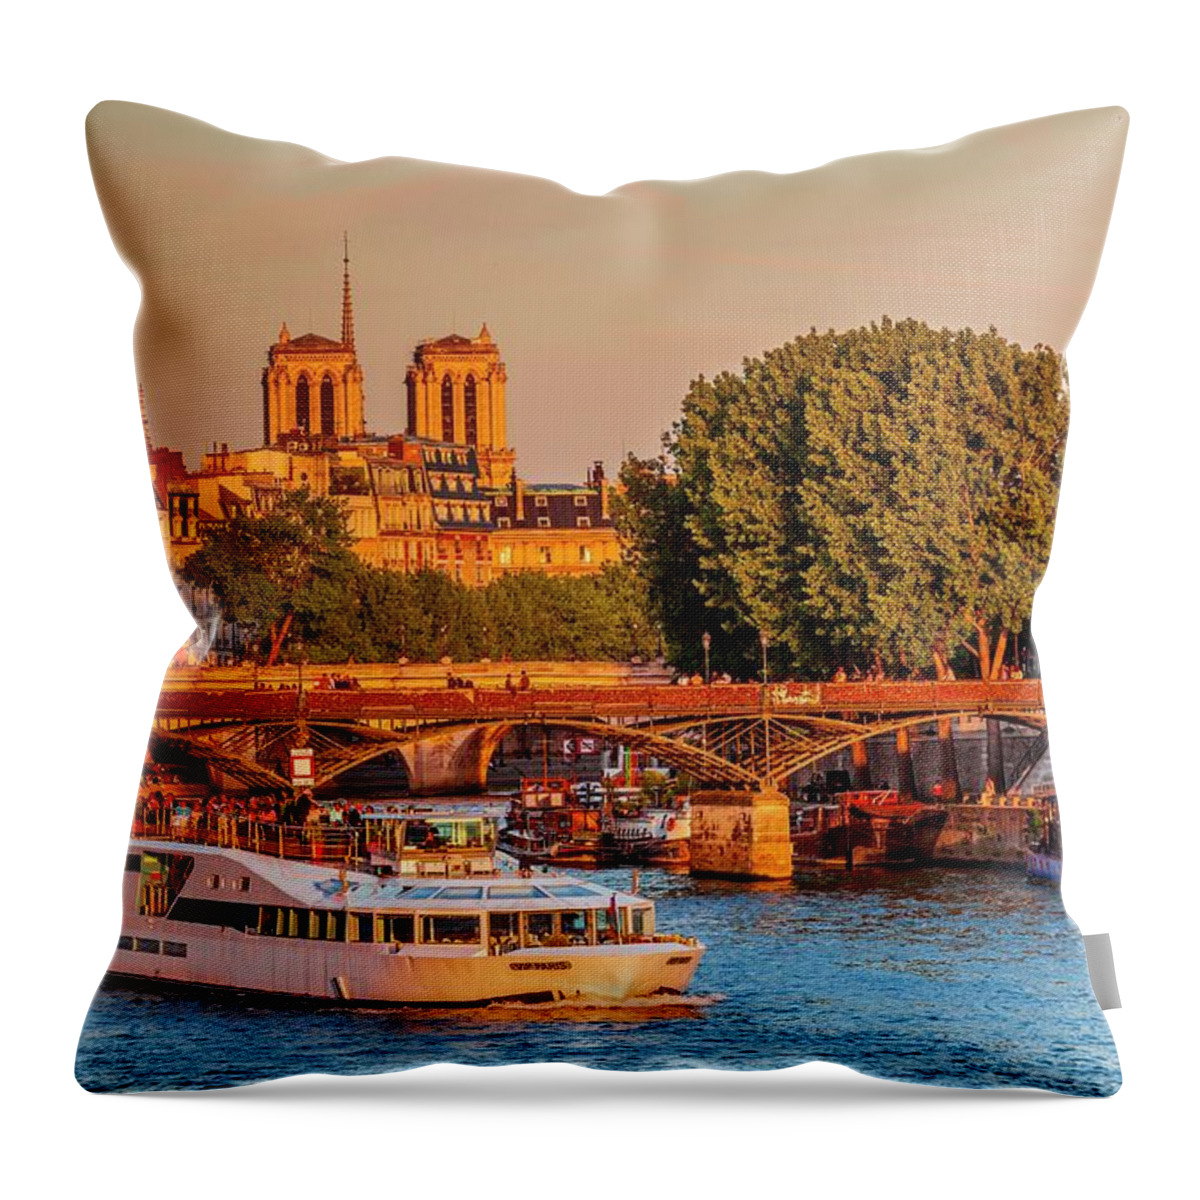 Estock Throw Pillow featuring the digital art France, Ile-de-france, Seine, Paris, Louvre, Vendome, Pont Des Arts, Pont Des Arts, Notre Dame De Paris In The Background by Alessandro Saffo